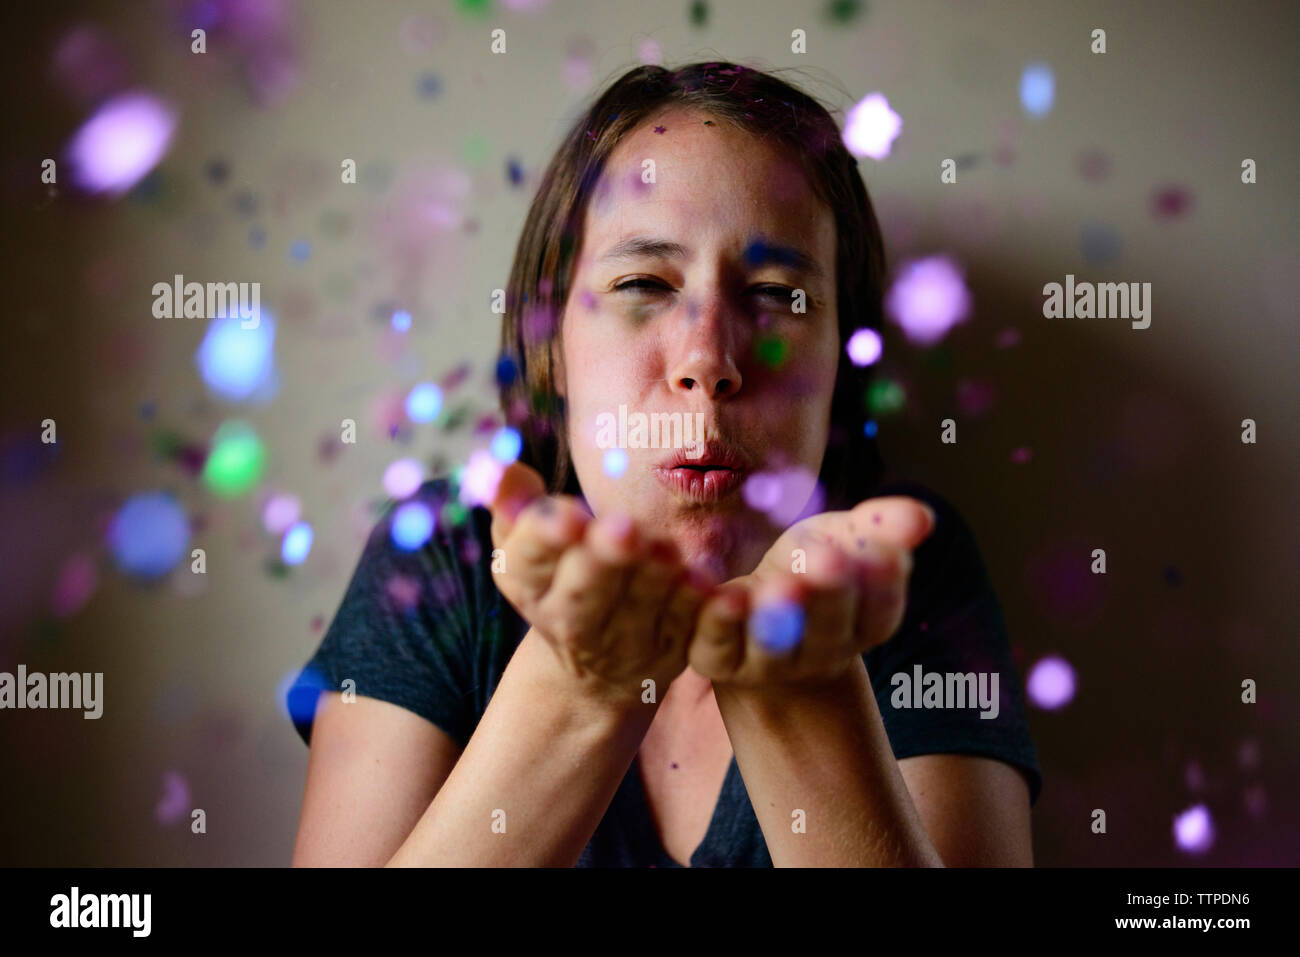 Woman blowing confetti contre mur Banque D'Images